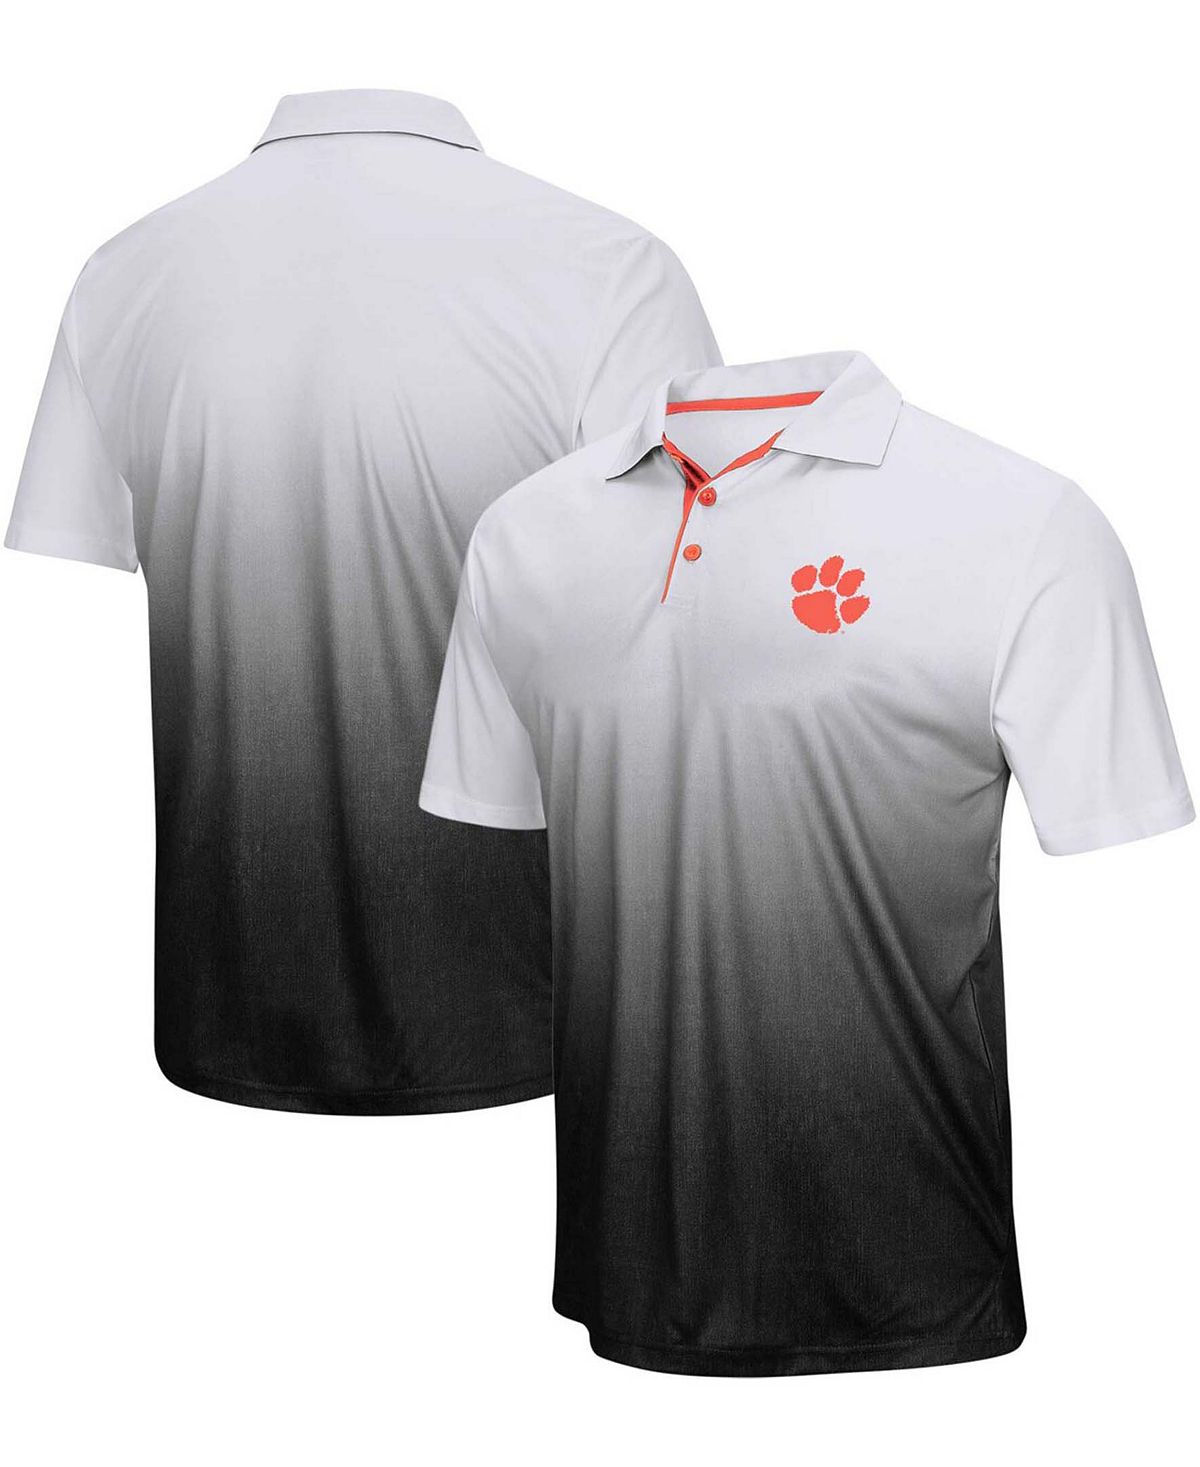 Мужская серая рубашка поло с логотипом clemson tigers magic team Colosseum, серый мужская оранжевая футболка поло clemson tigers marshall colosseum